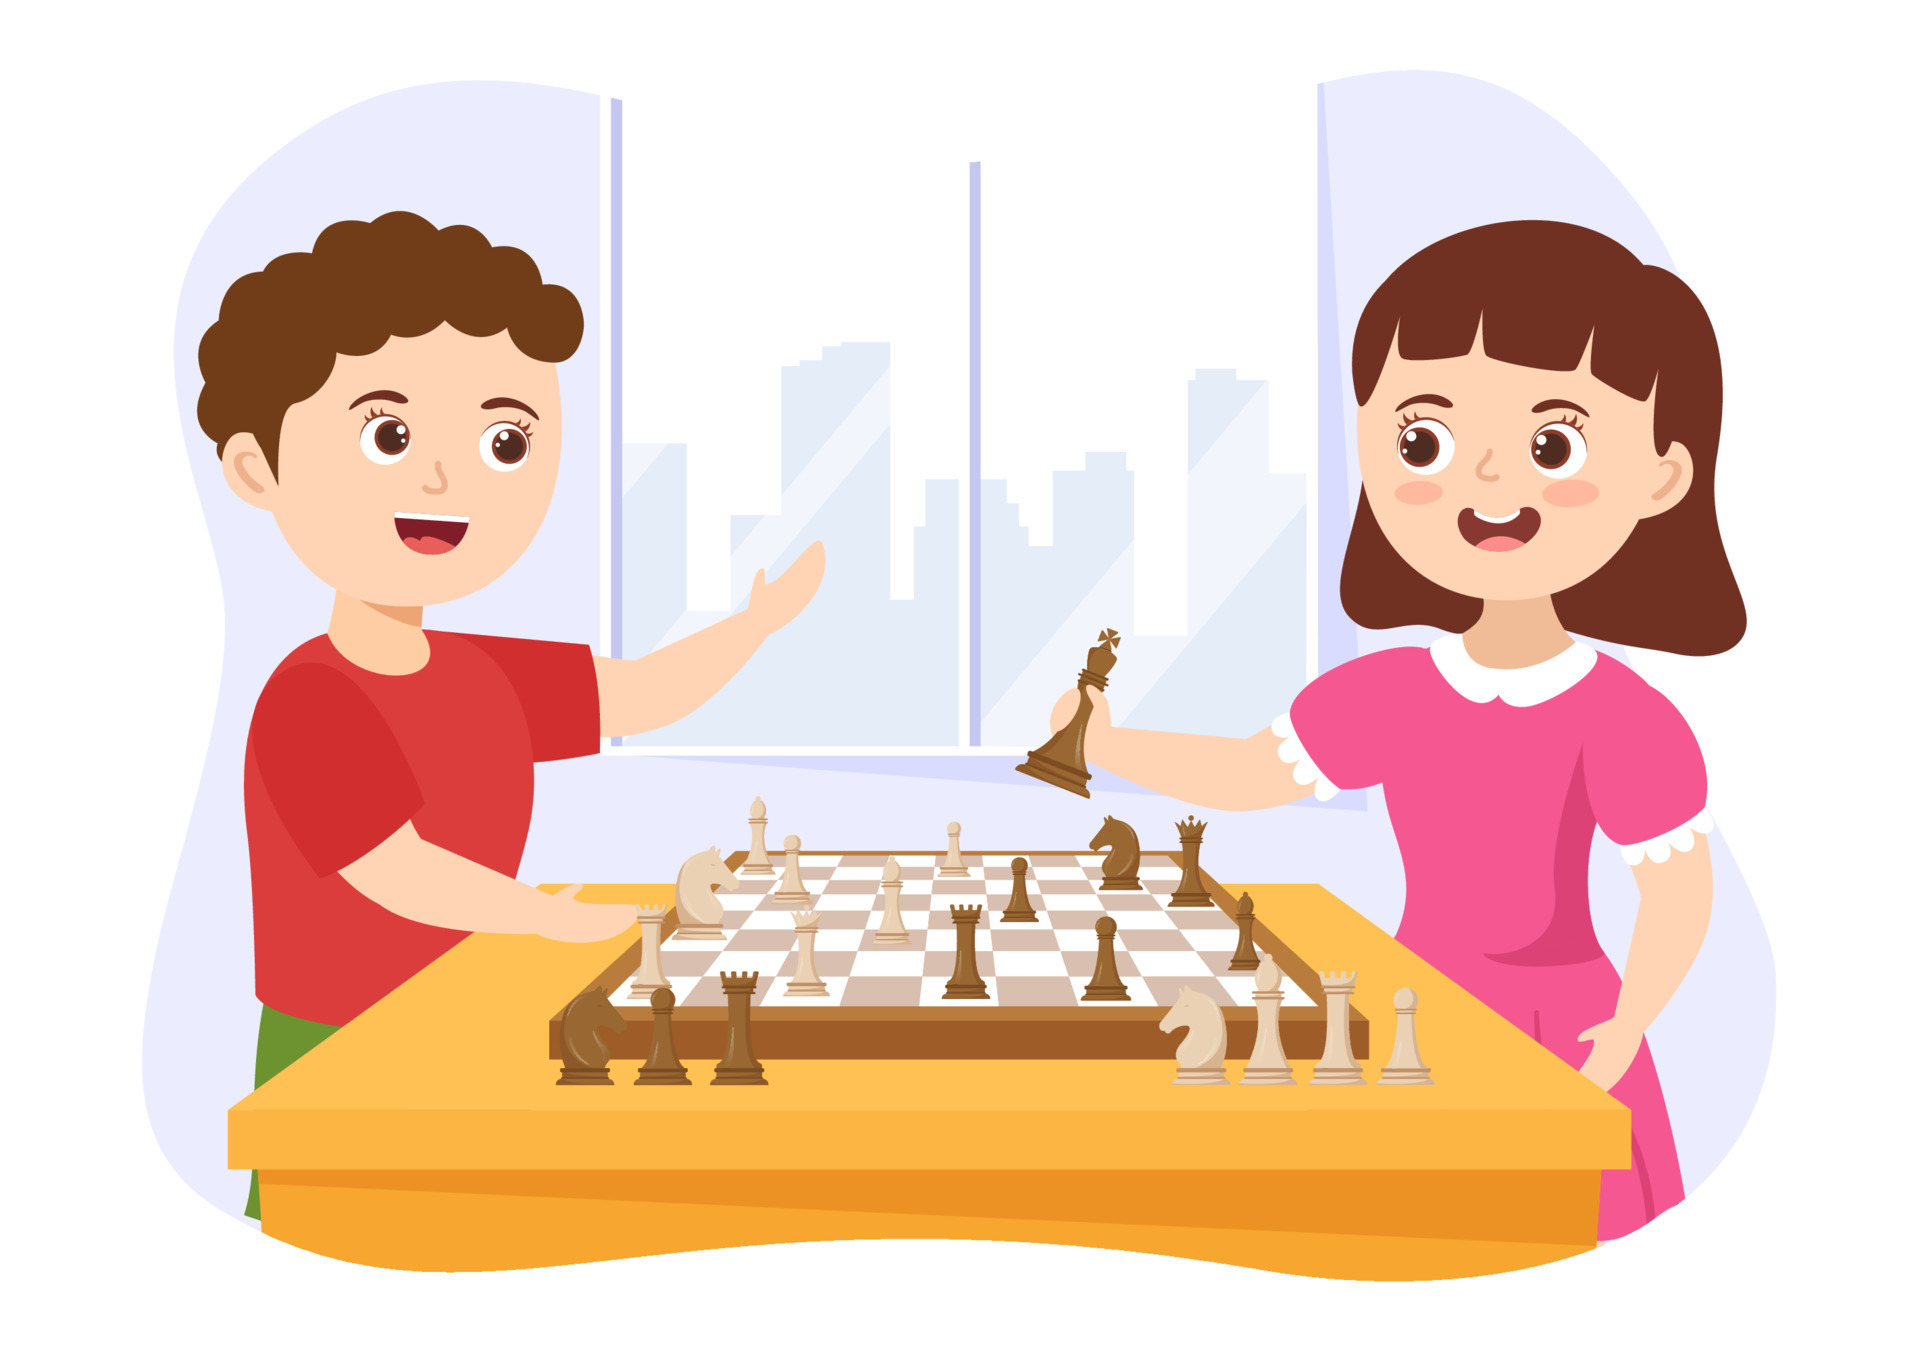 Tabuleiro de xadrez em javascript, JavaScript e HTML: pratique lógica com  desenhos, animações e um jogo